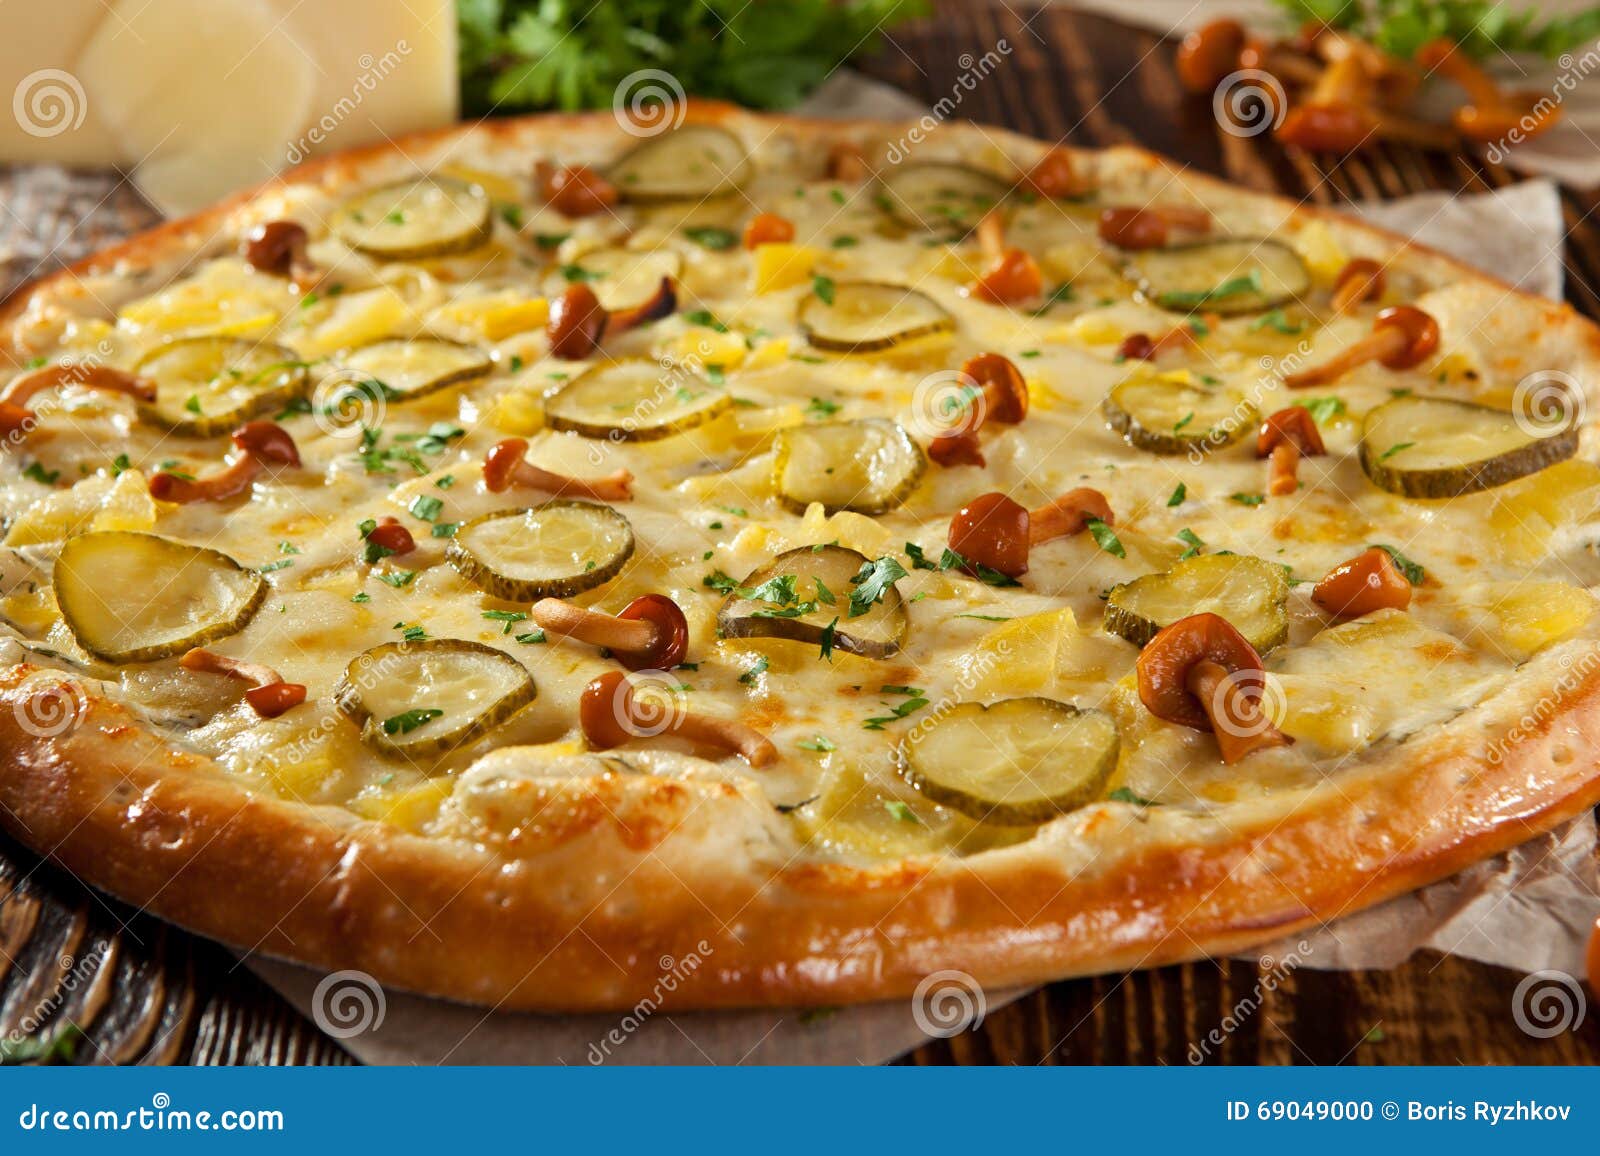 грибная пицца с шампиньонами и колбасой рецепт фото 93